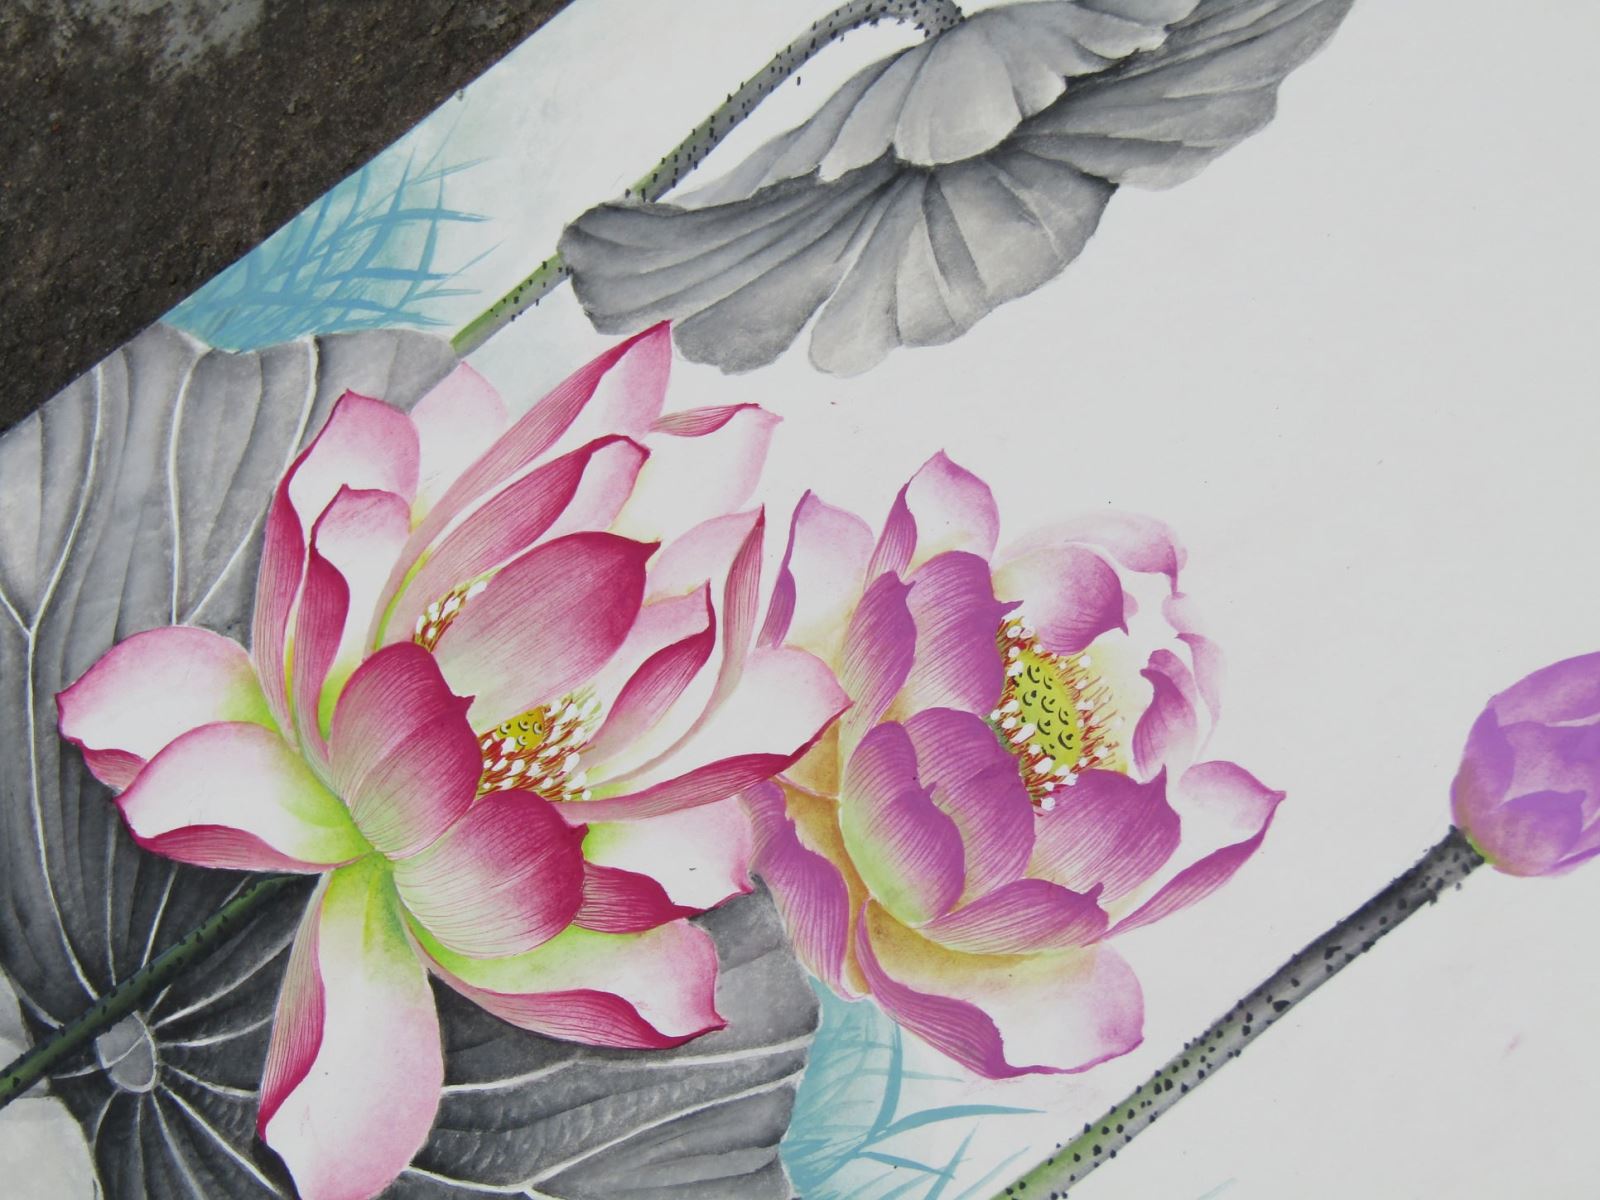 Hướng dẫn vẽ Hoa Sen đơn giản nhất  how to draw lotus flowers  YouTube